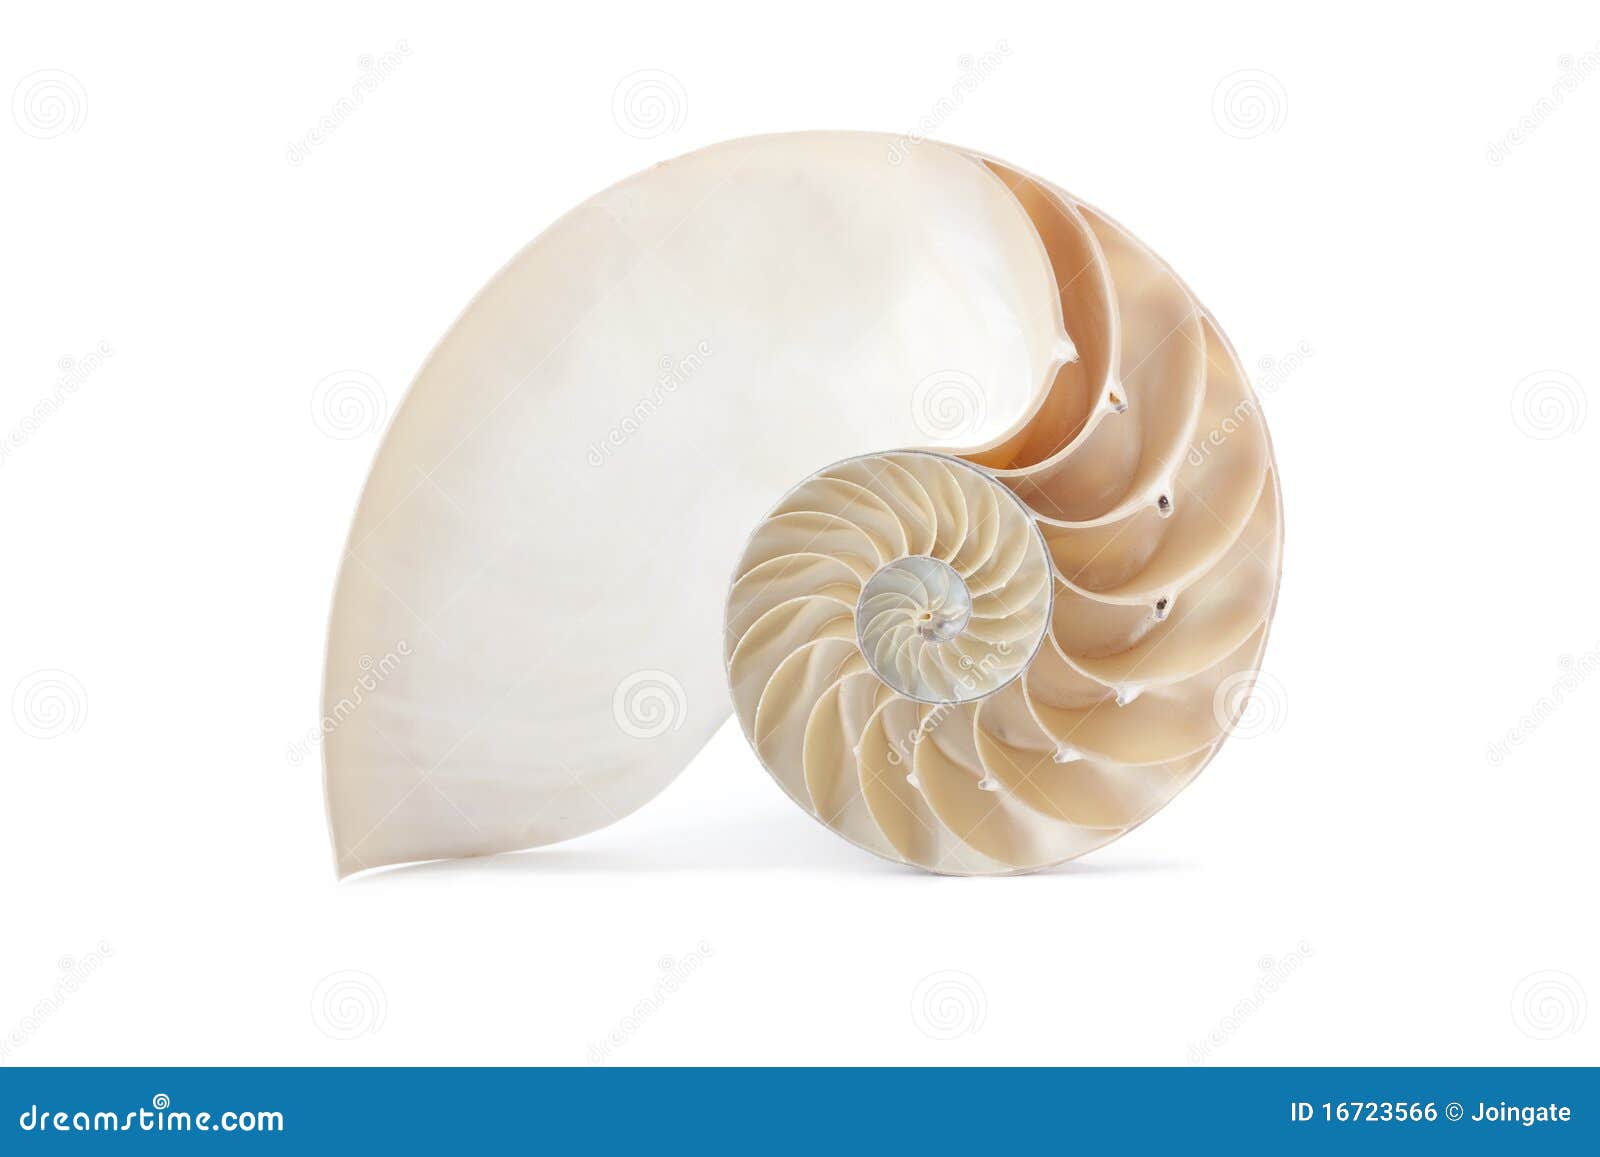 nautilus shell and famous geometric pattern